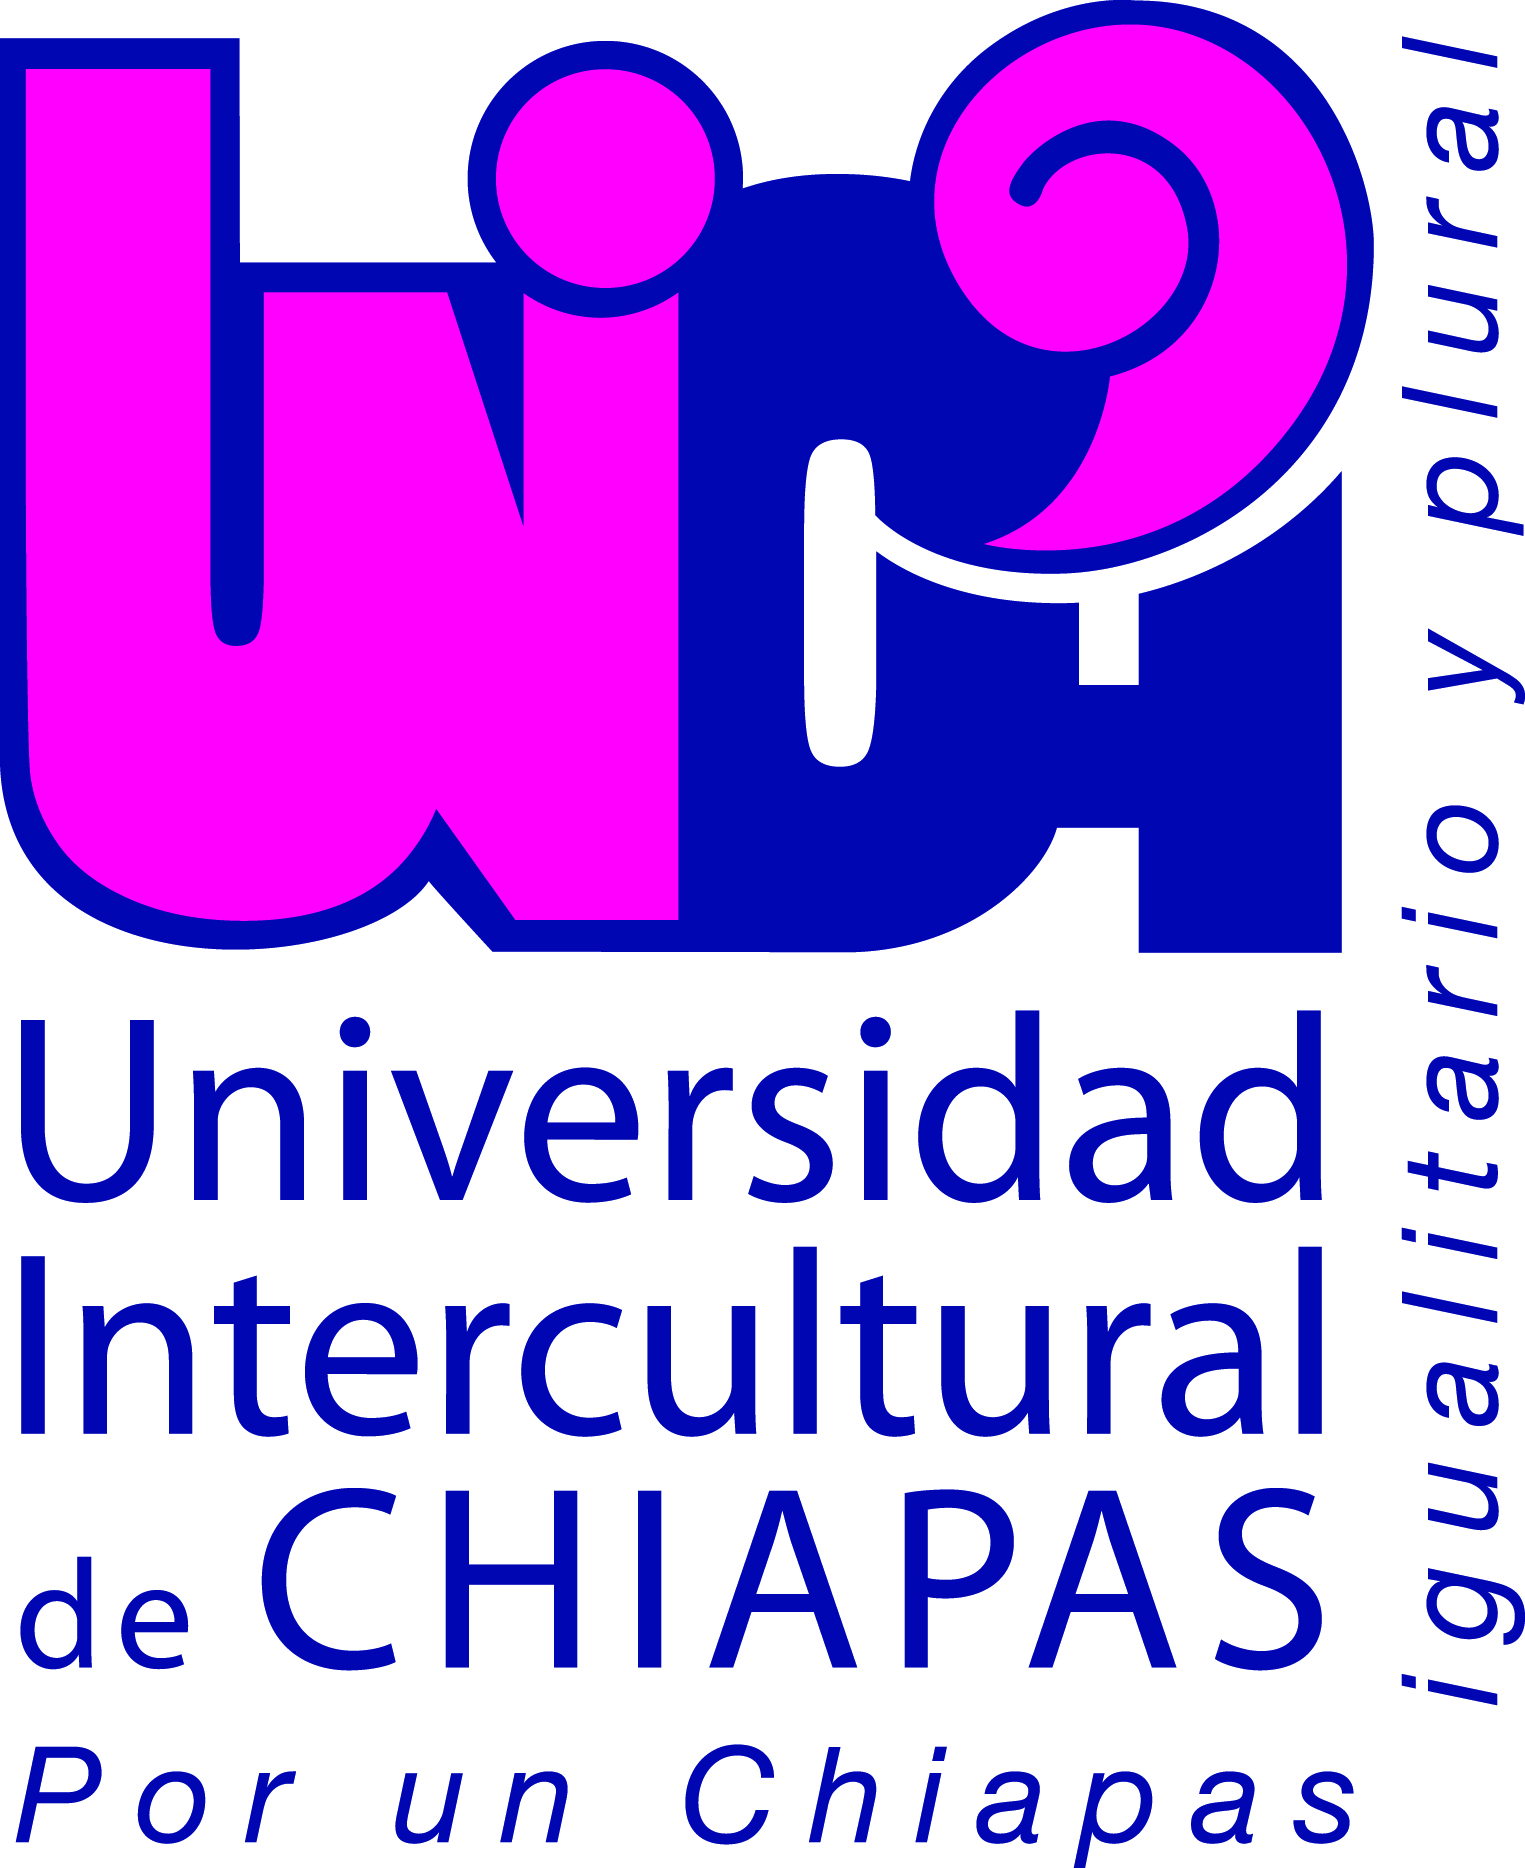 Universidad Intercultural de Chiapas